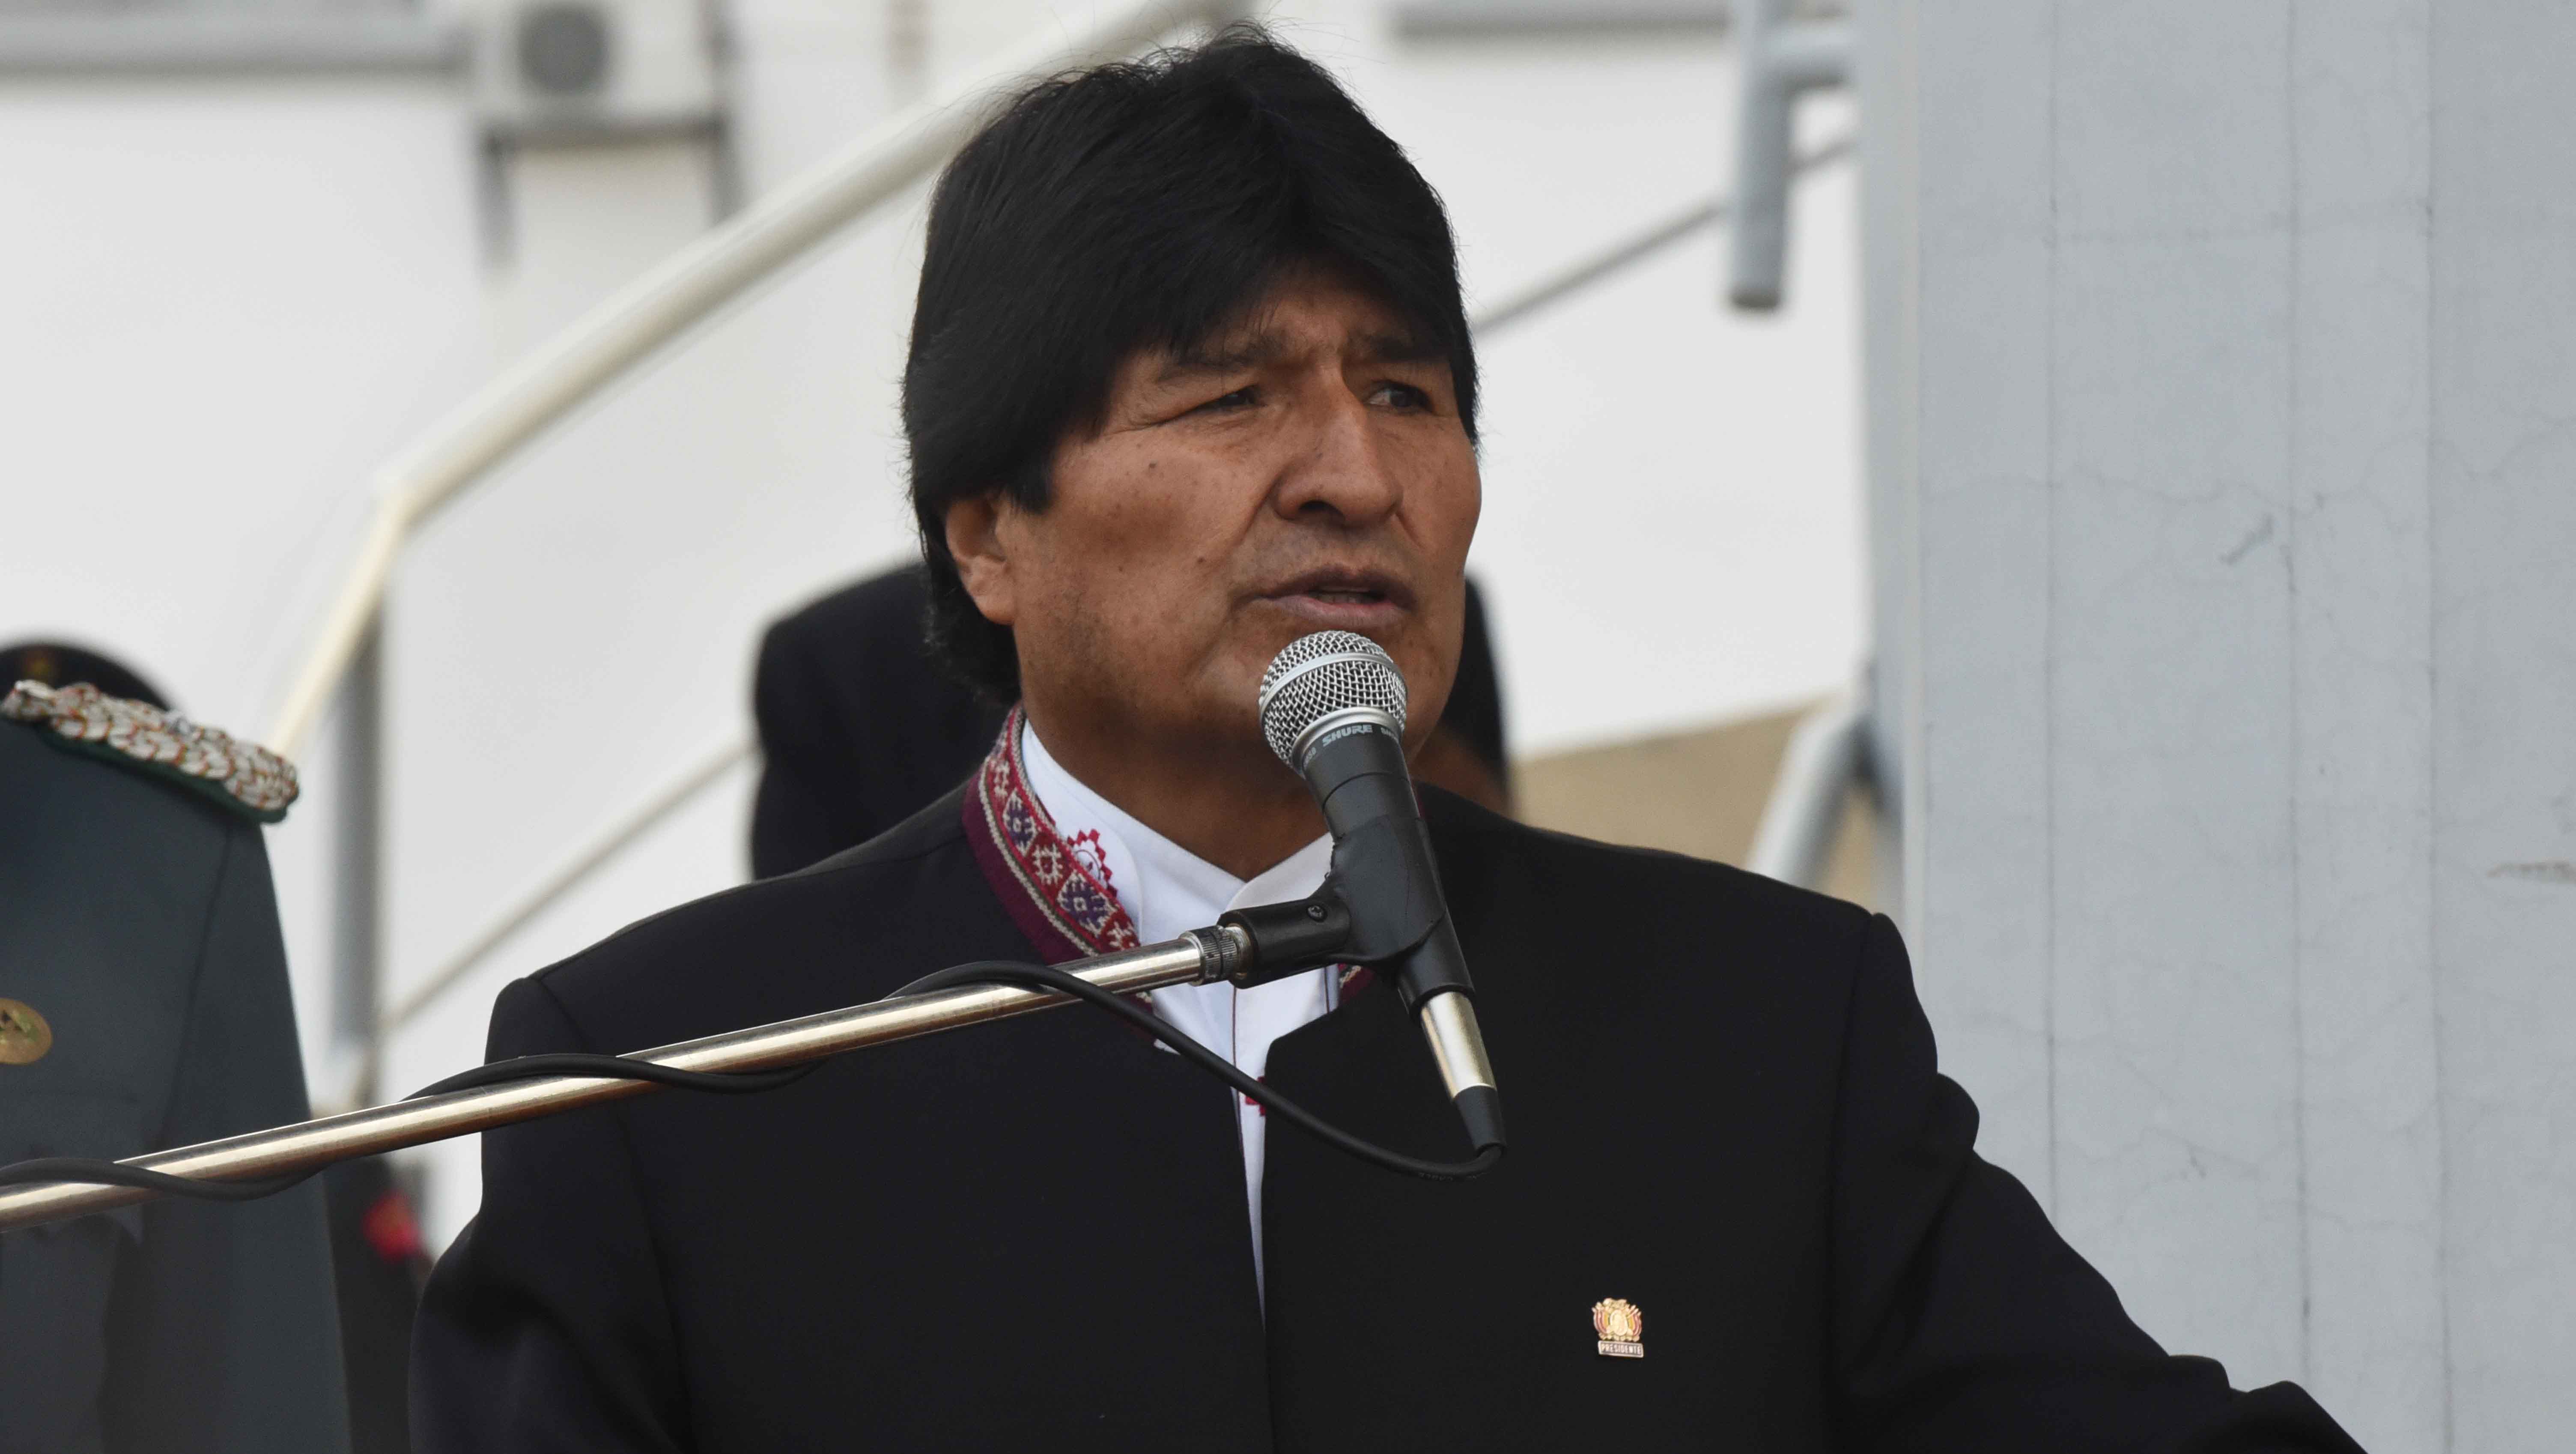 El presidente boliviano se solidarizó con México ante las acciones de Trump.